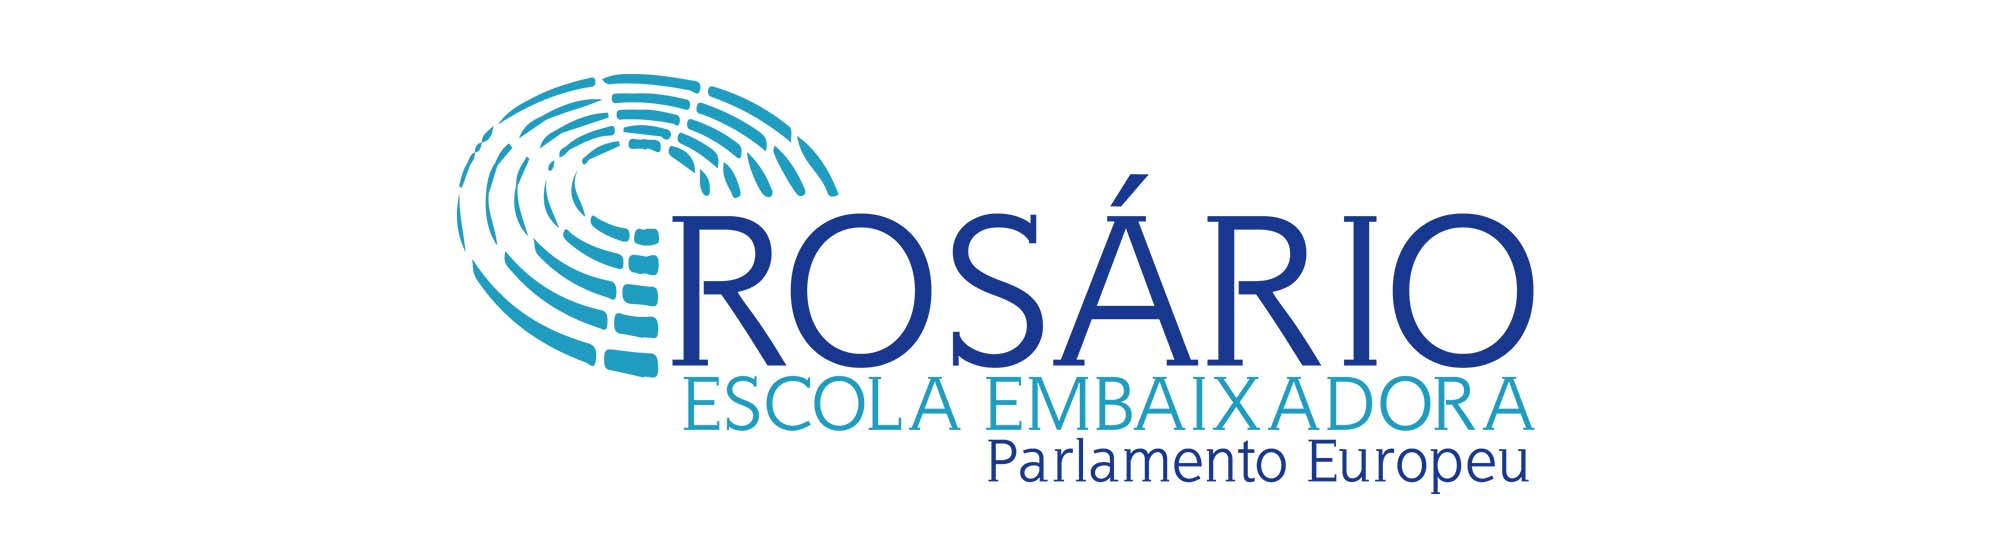 Escola Embaixadora do Parlamento Europeu
